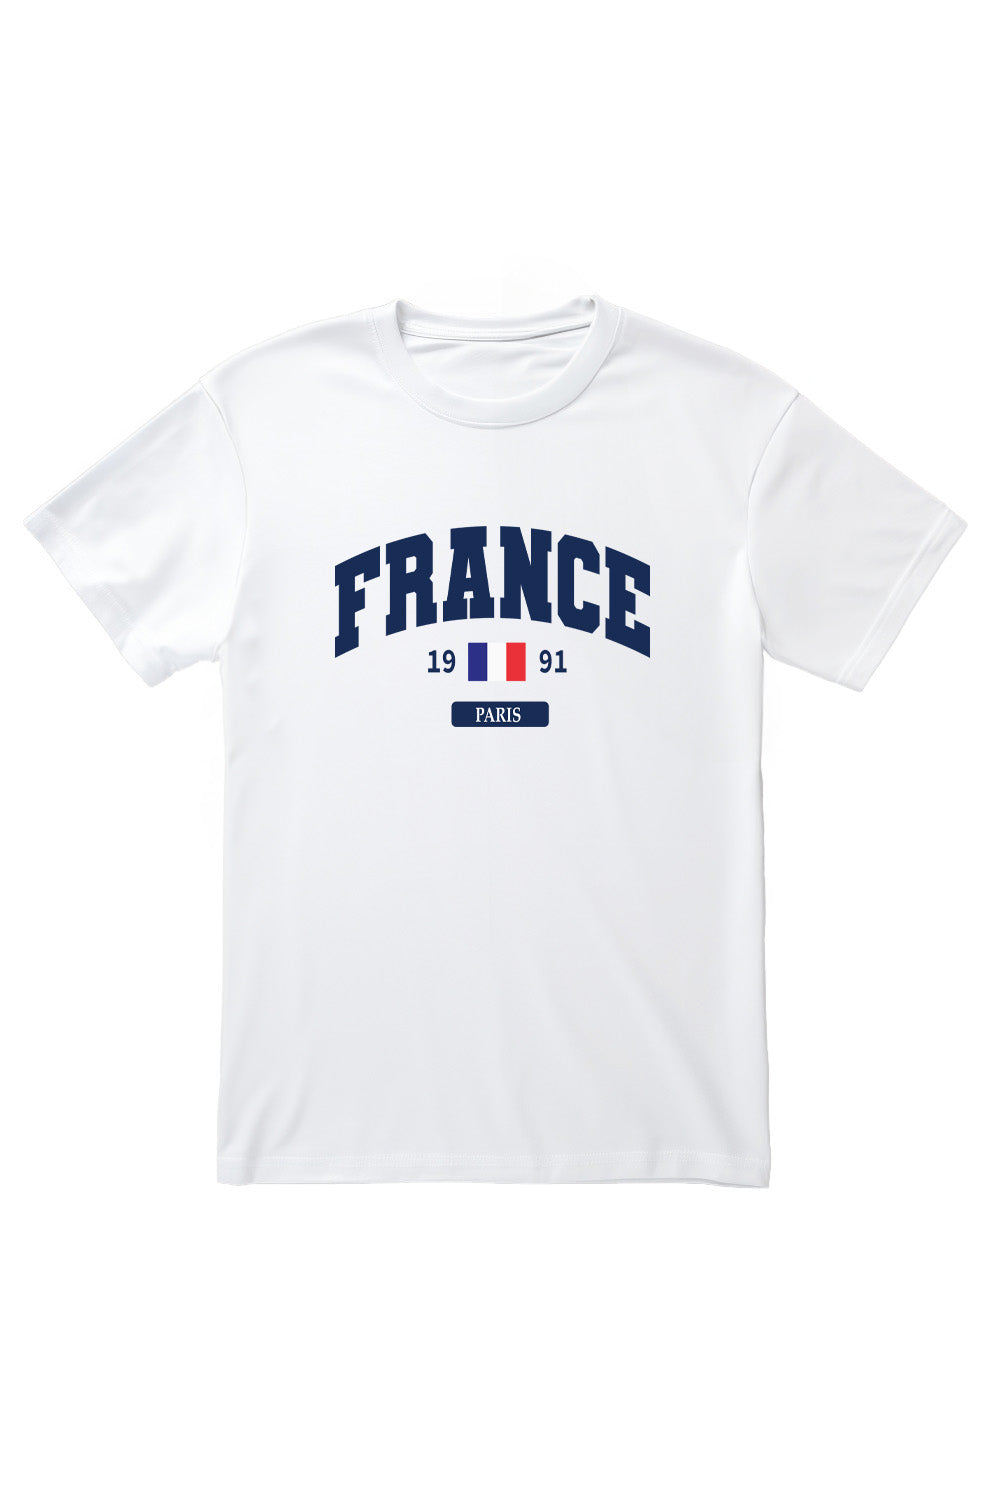 France T-Shirt in White (Custom Packs)